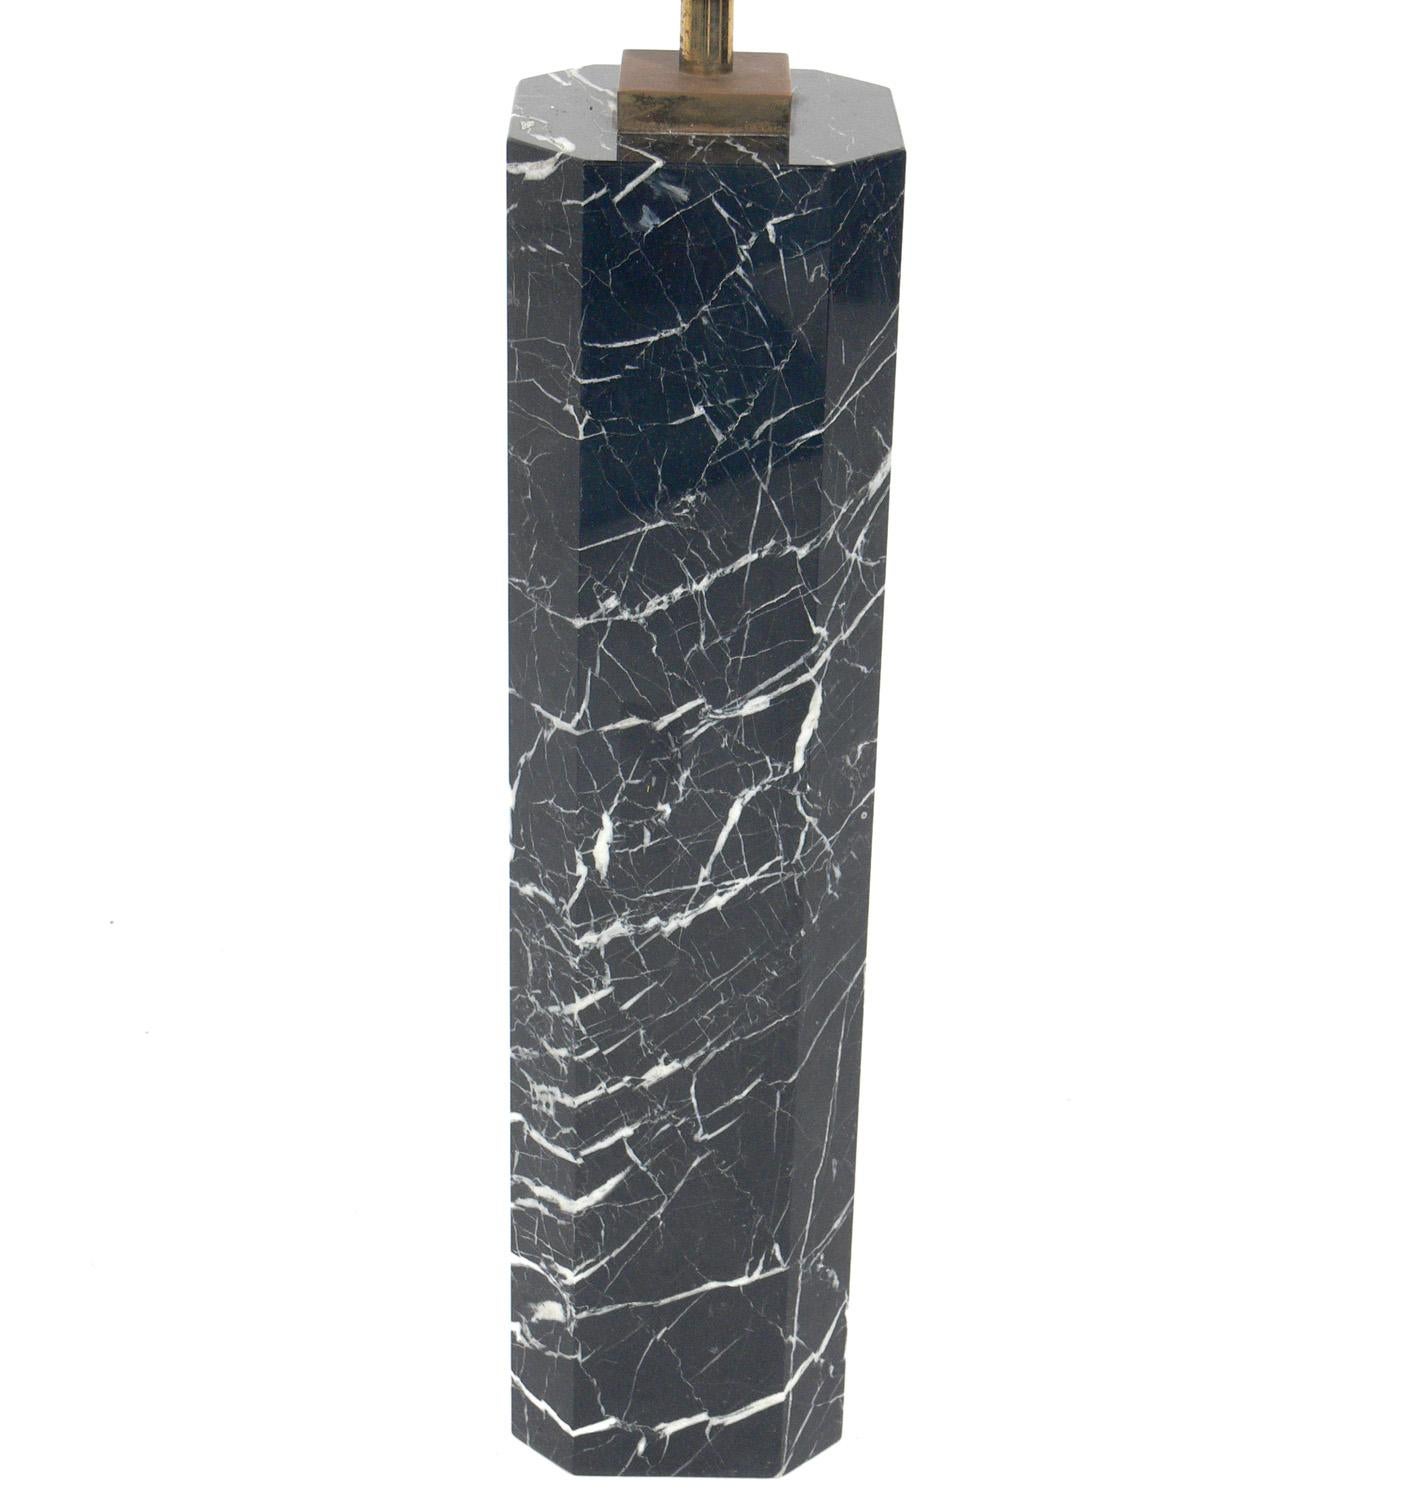 Élégante lampe en marbre, conçue par T.H. Robsjohn Gibbings pour Hansen, américain, vers les années 1950. Magnifique marbre noir avec veinage blanc et quincaillerie originale en laiton patiné. Il a été recâblé et est prêt à être utilisé. Le prix